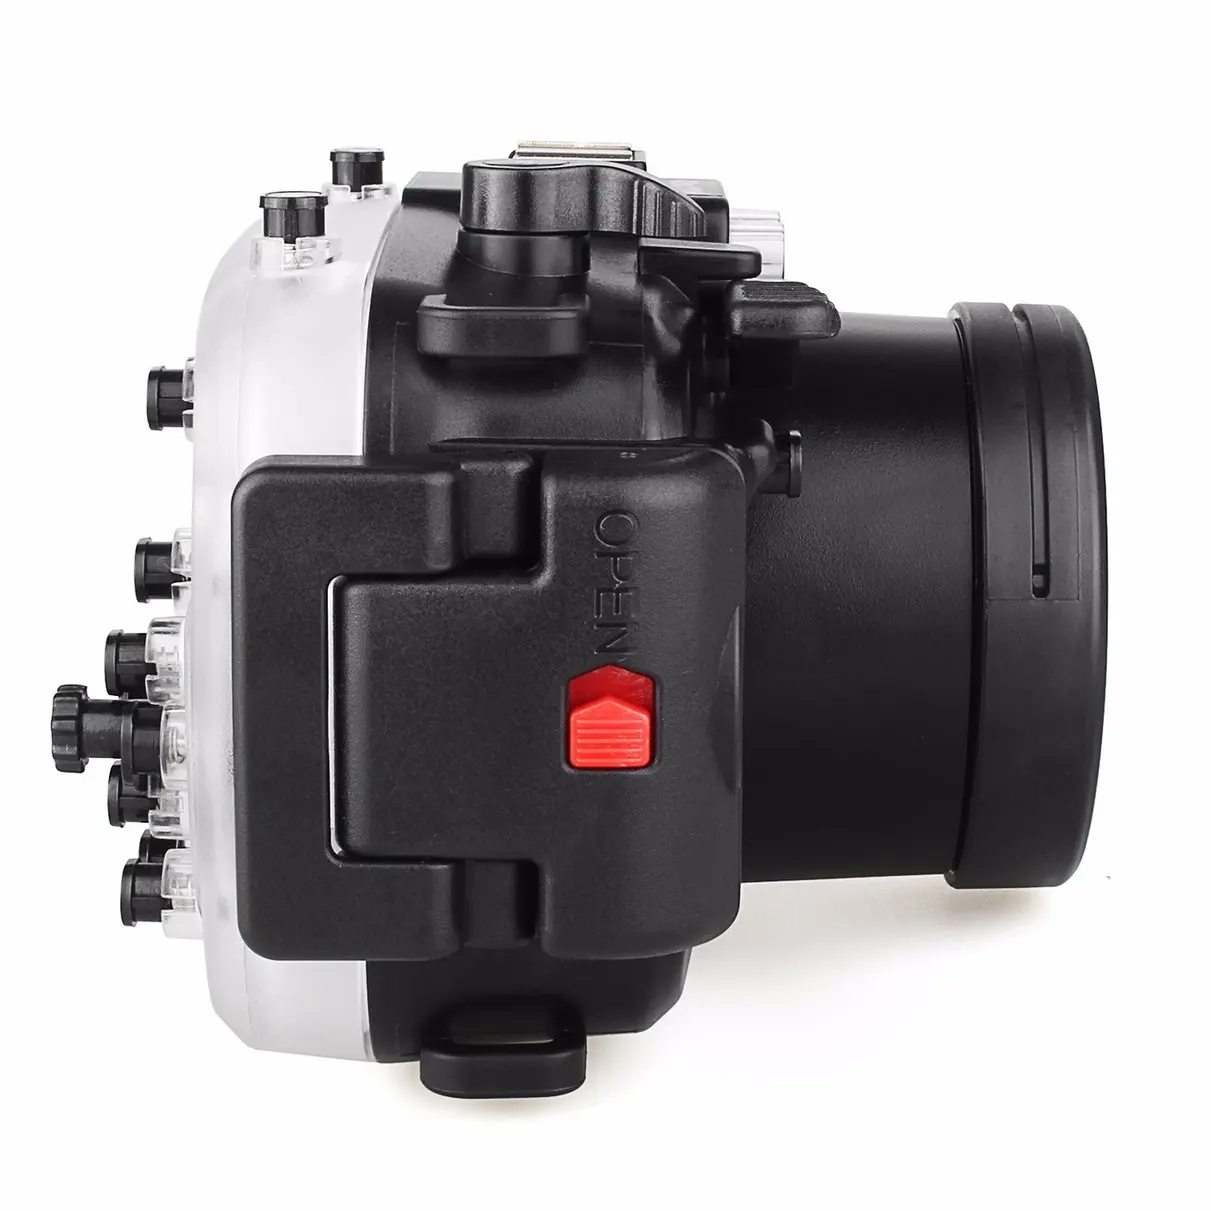 Чехол для подводной камеры Meikon 40 м/130 футов для Объектива sony A5100 16-50 мм, водонепроницаемый чехол для камеры+ красный фильтр для sony A5100